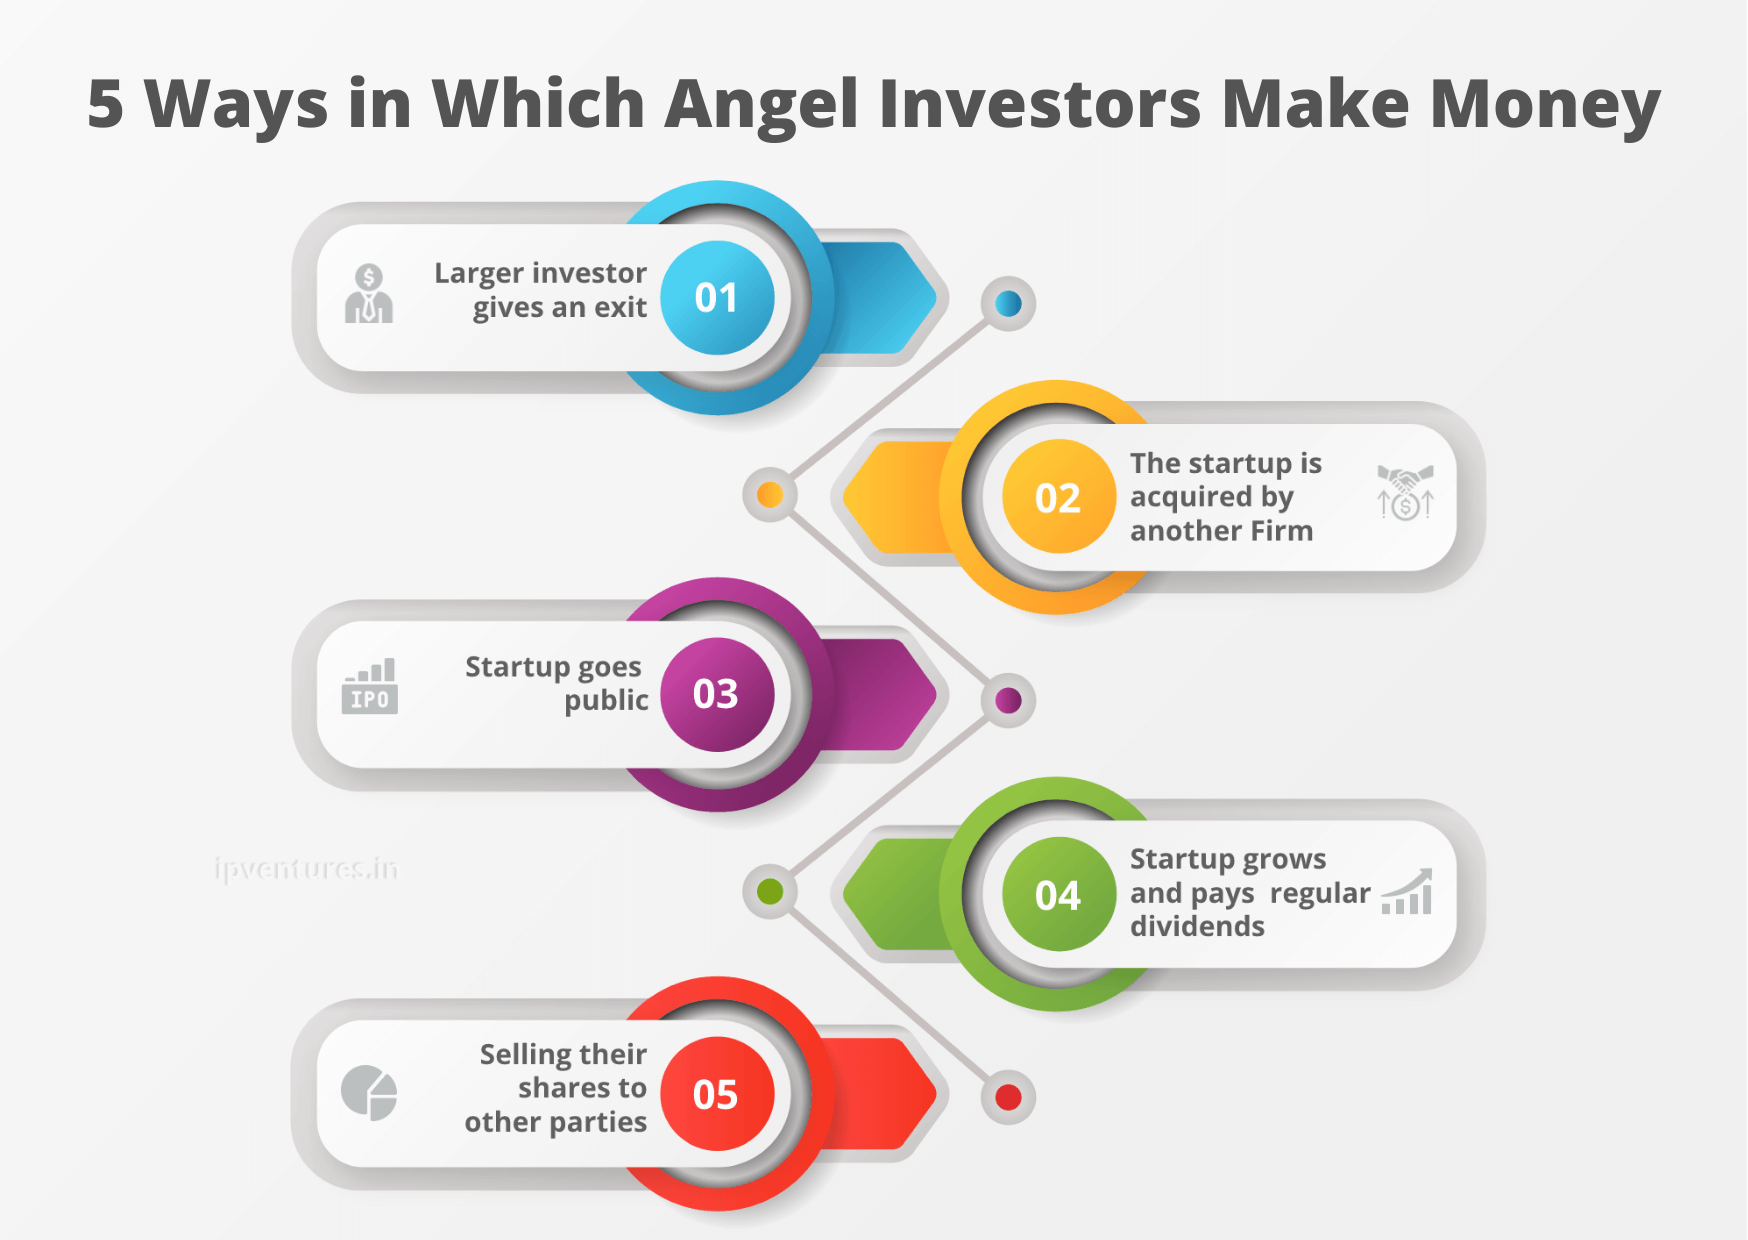 how do angel investors make money?